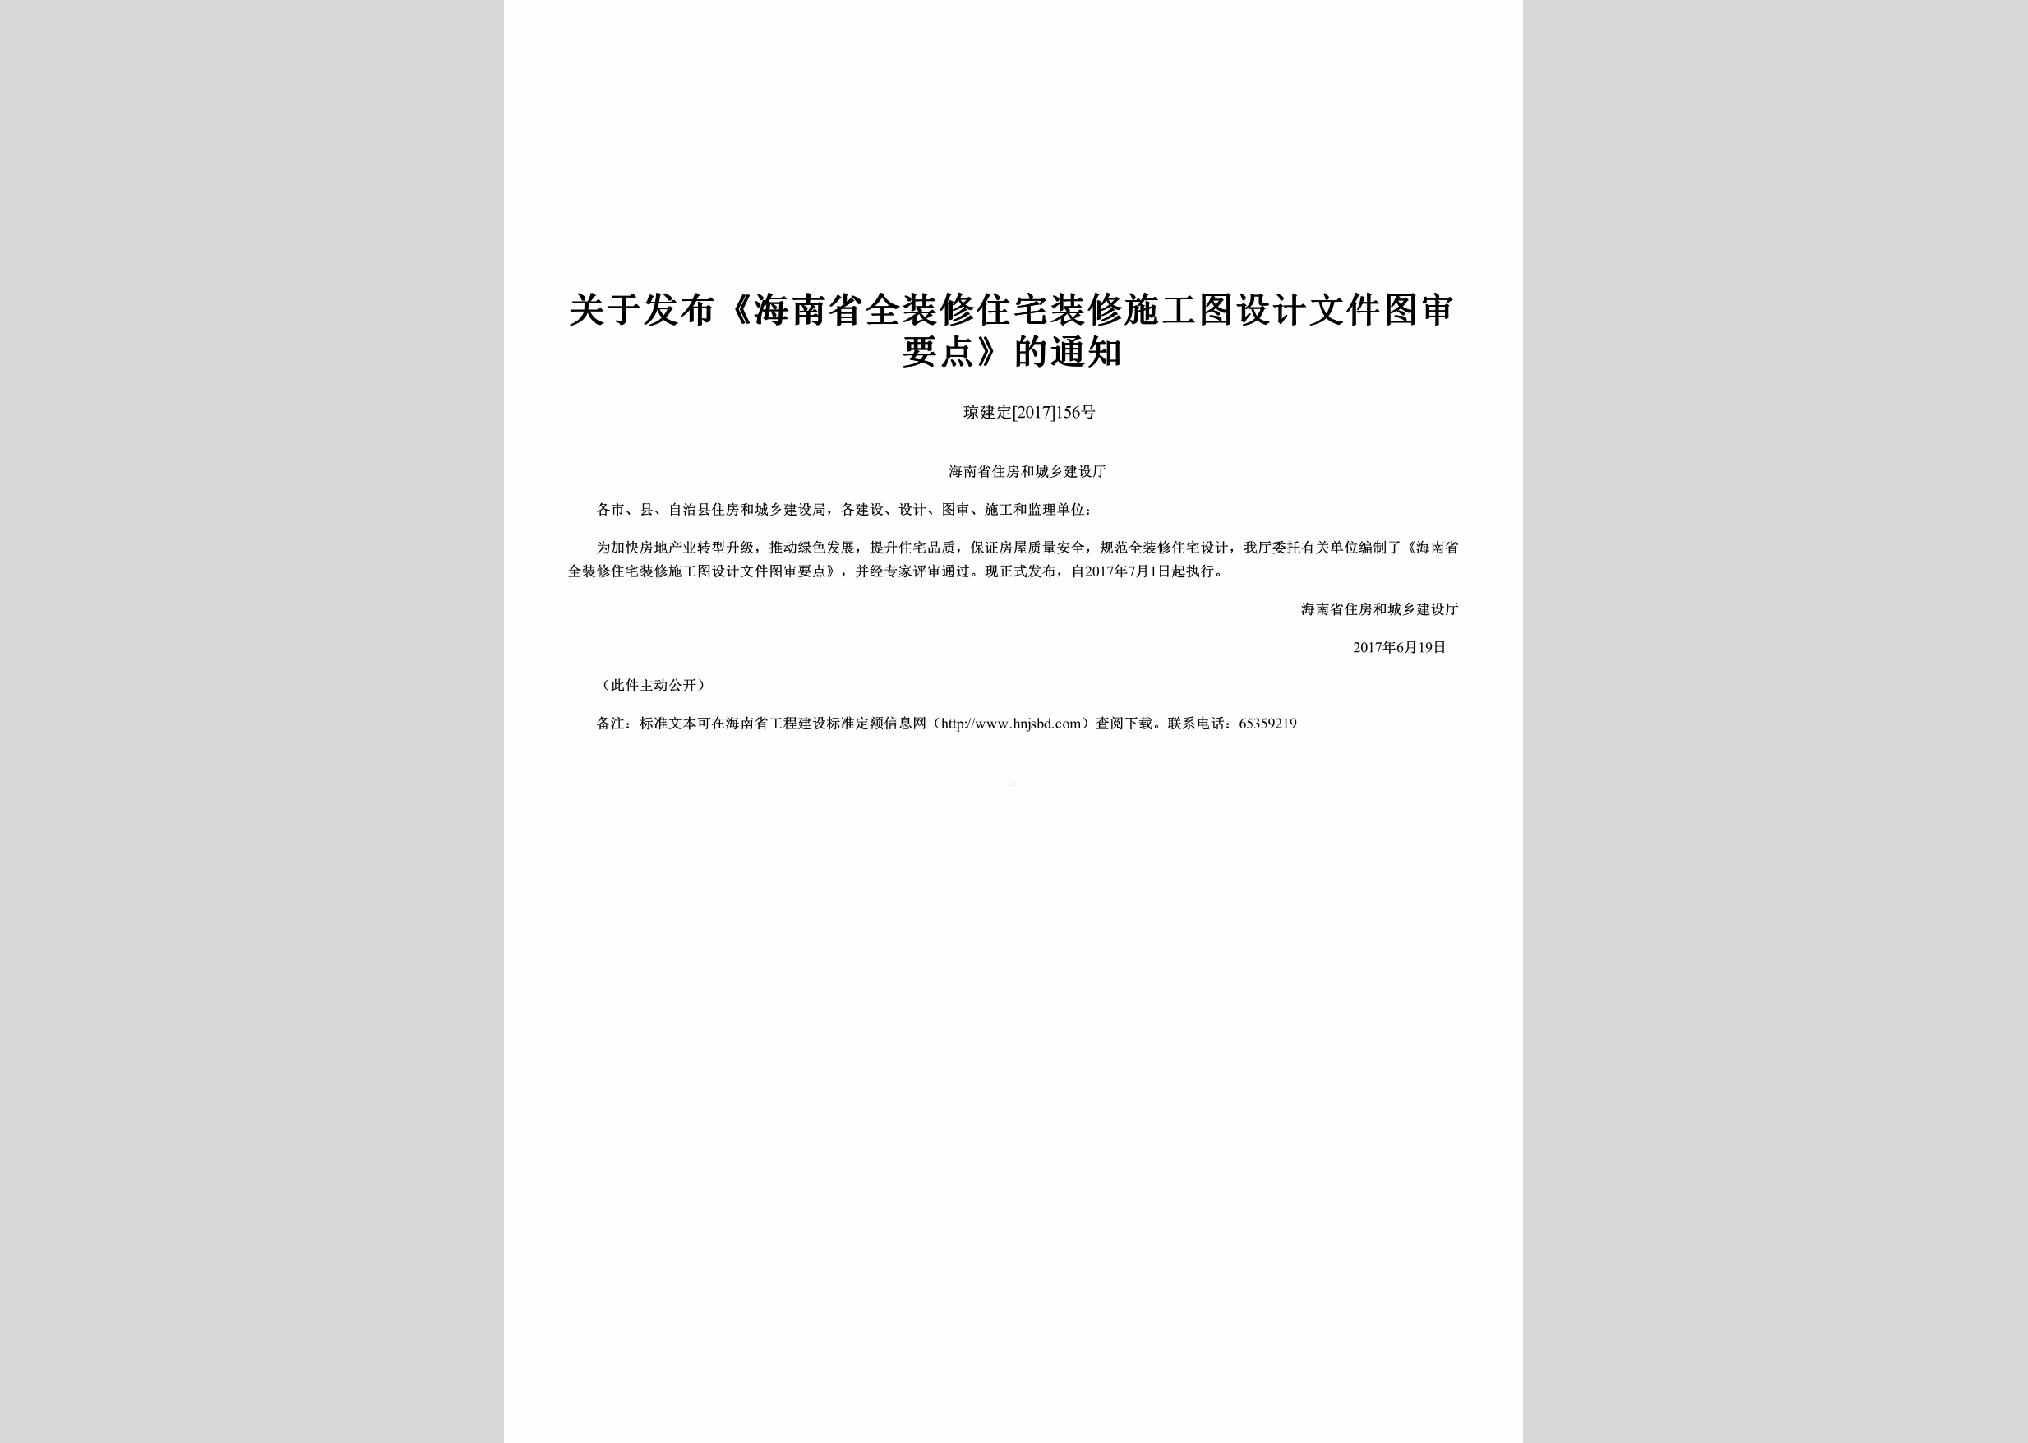 琼建定[2017]156号：关于发布《海南省全装修住宅装修施工图设计文件图审要点》的通知